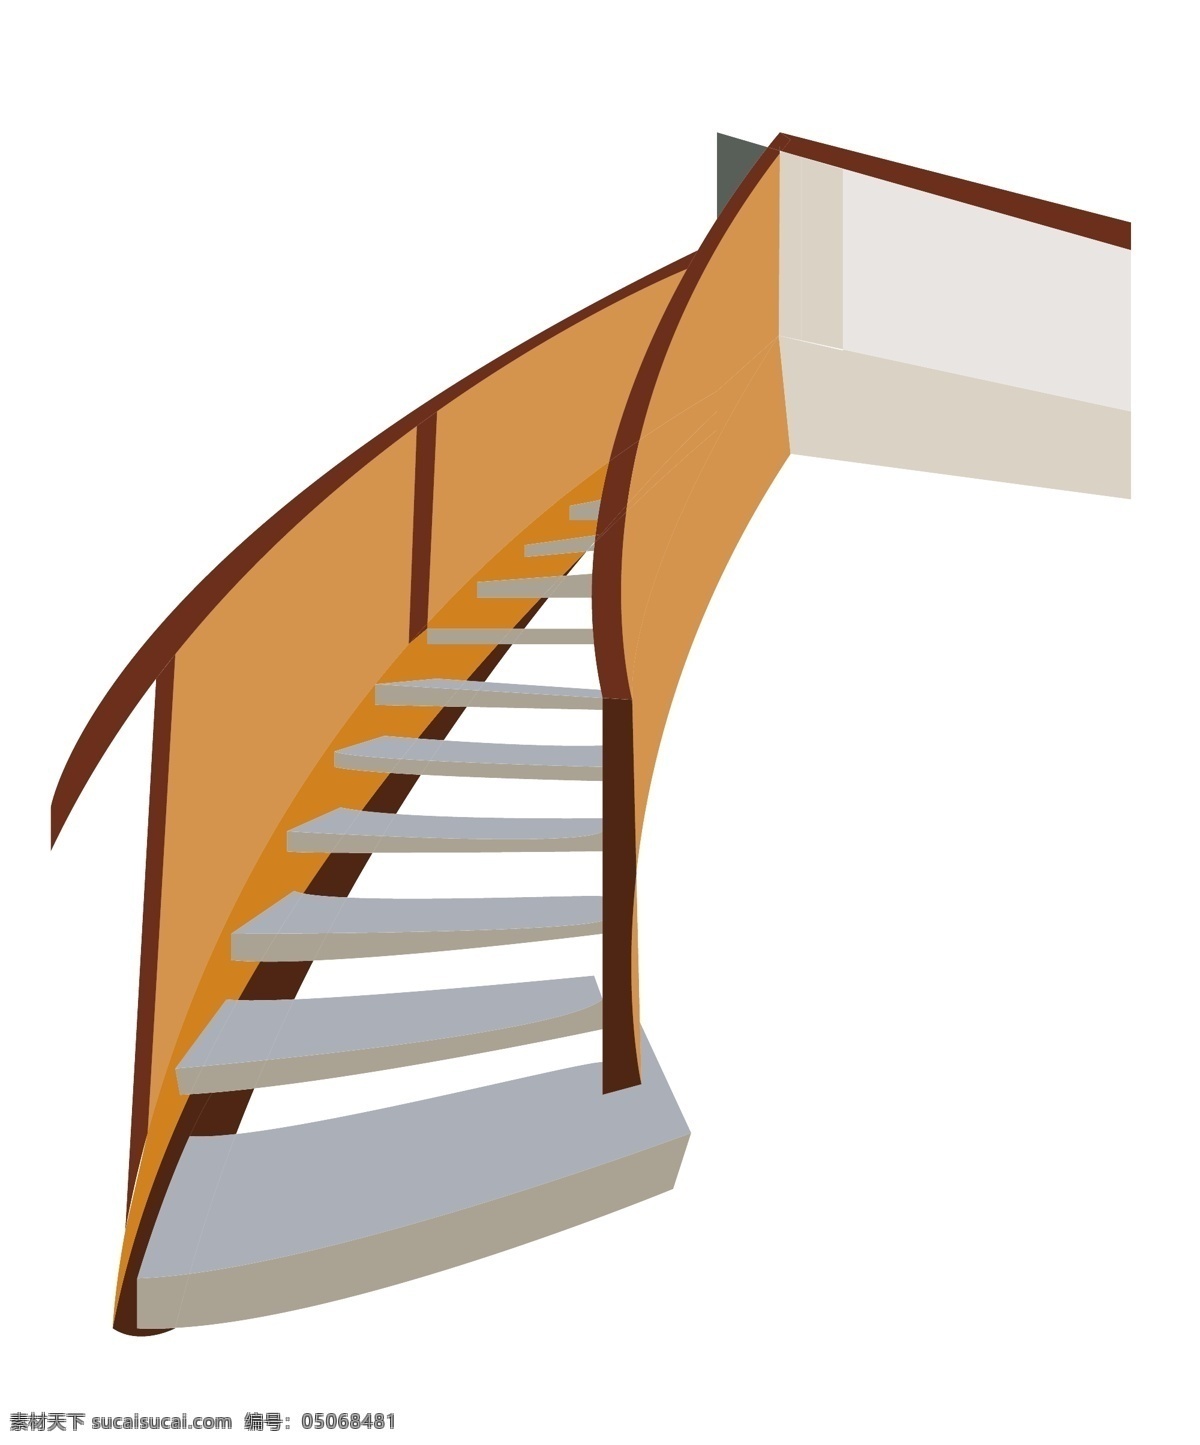 立体 楼房 楼梯 插图 护栏 栏杆 手扶栏杆 立体楼梯 楼房楼梯 上楼 阶梯 楼房阶梯 咖啡色